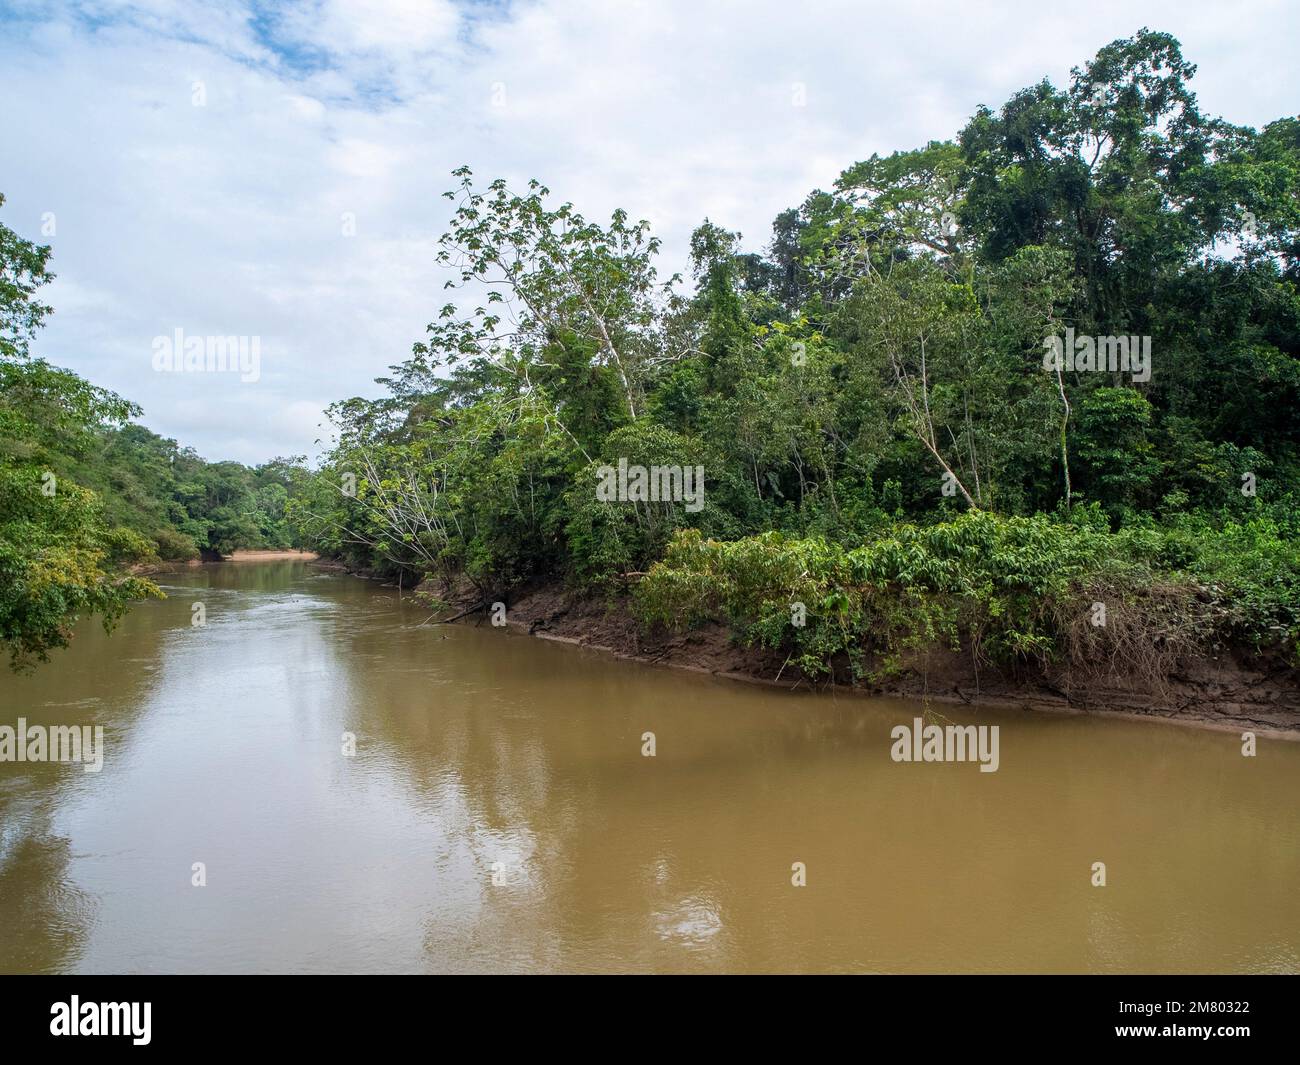 Río Tiputini En la Amazonía ecuatoriana, el río corre a través de la prístina selva primaria que bordea el Parque Nacional Yasuní Foto de stock